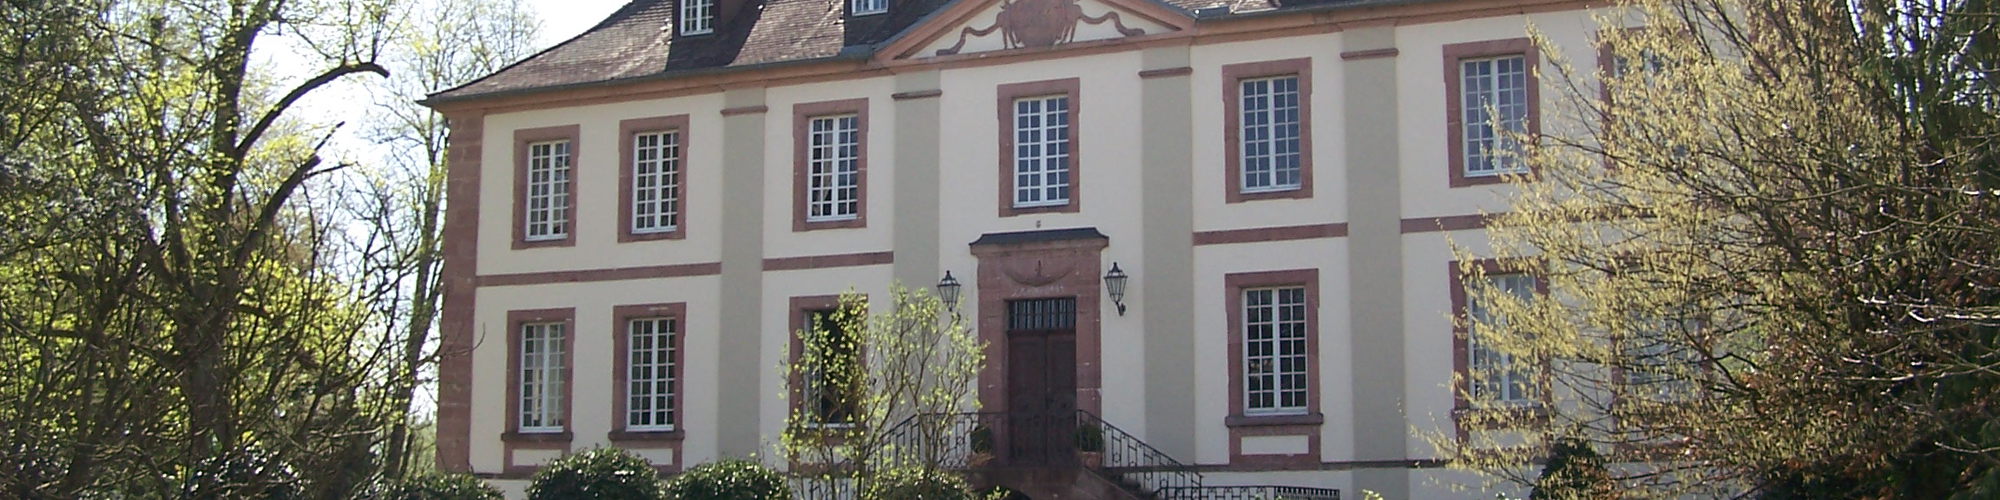 March Neuershausen Schloss